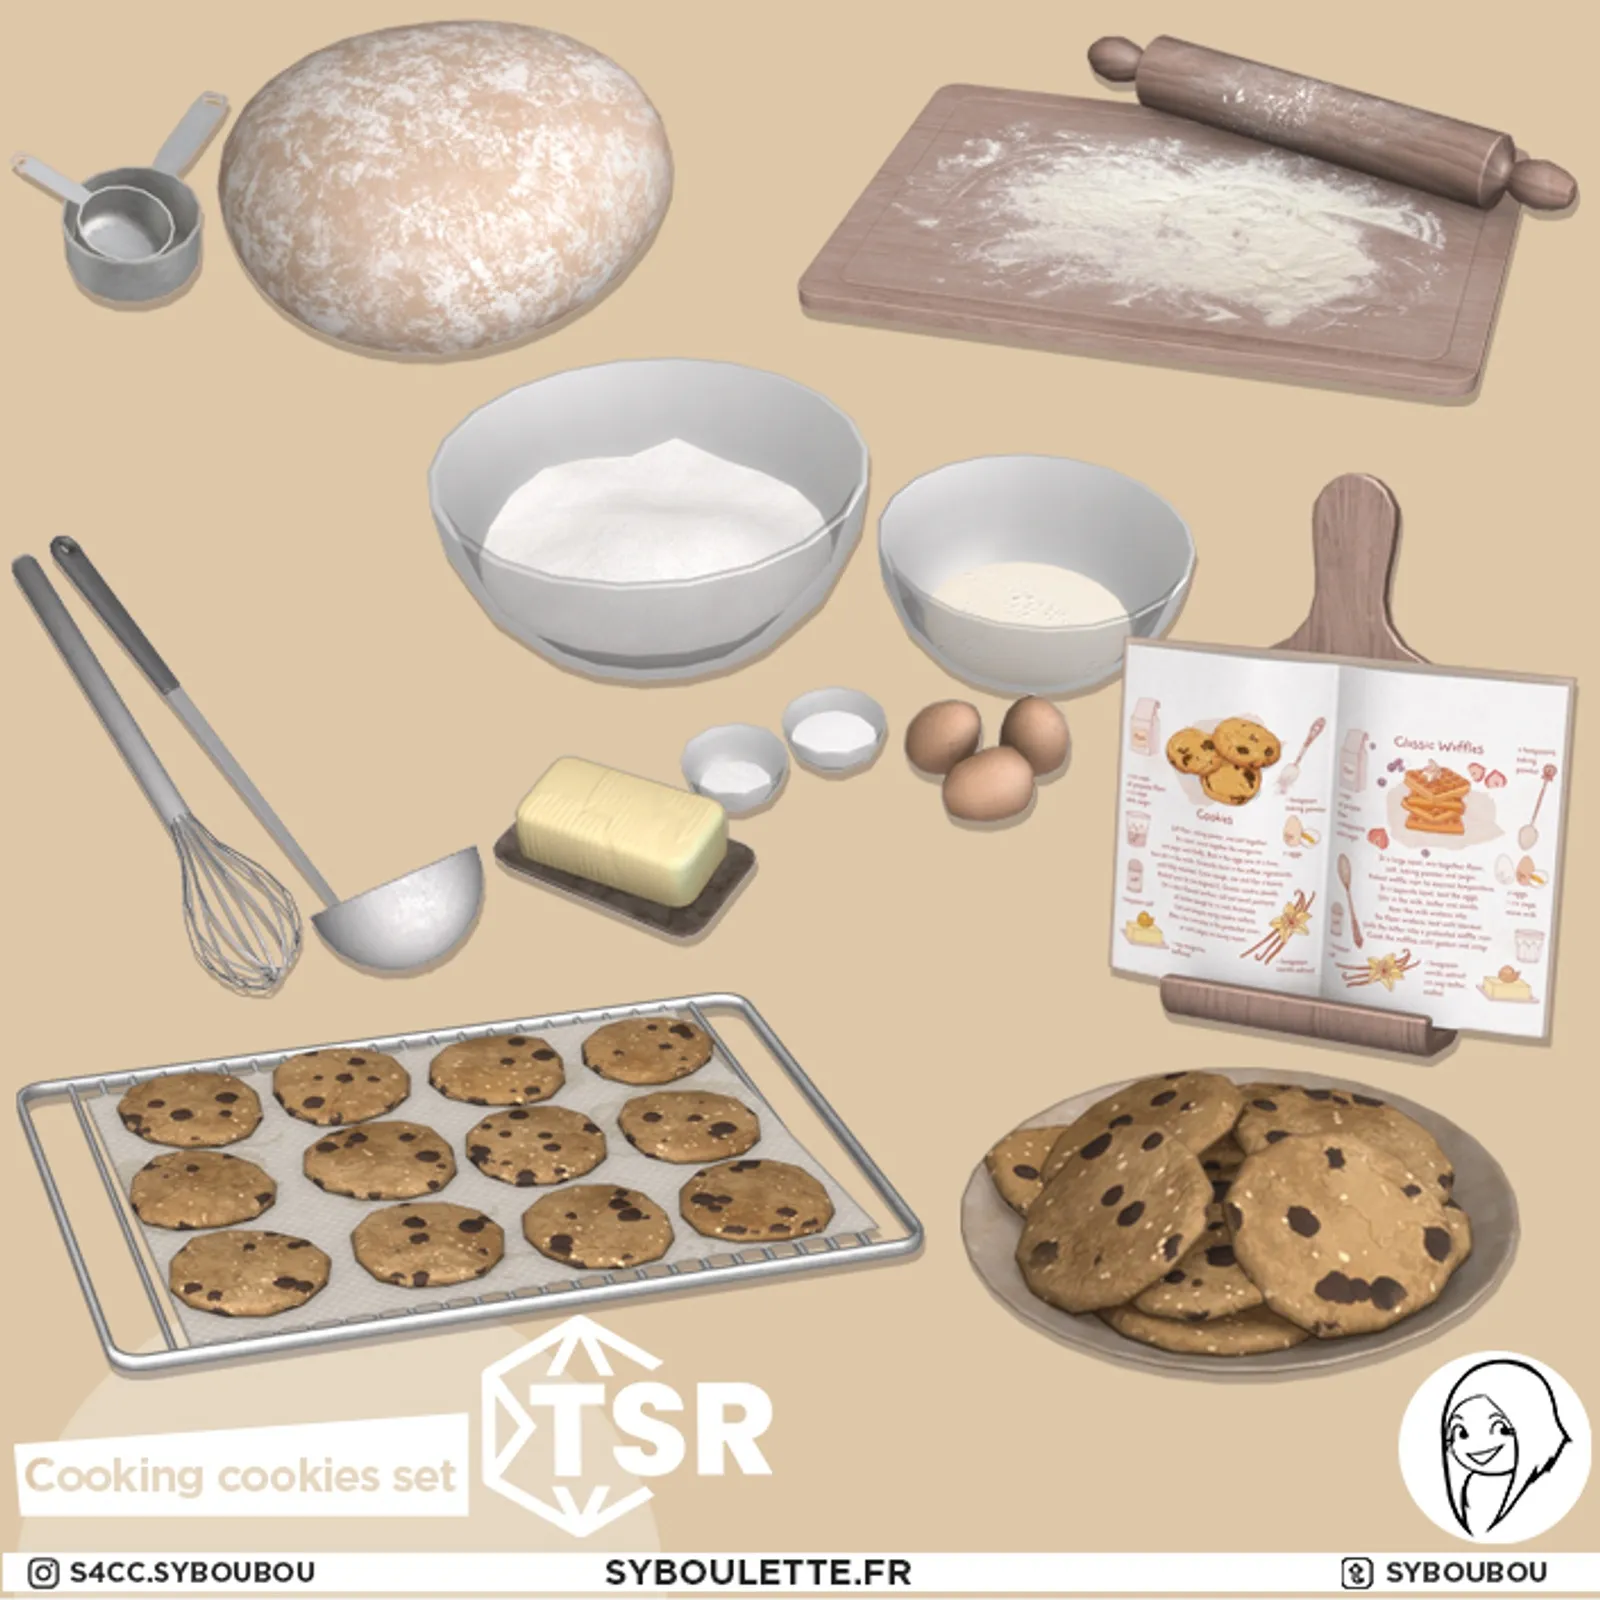 Cooking cookies set (TSR)